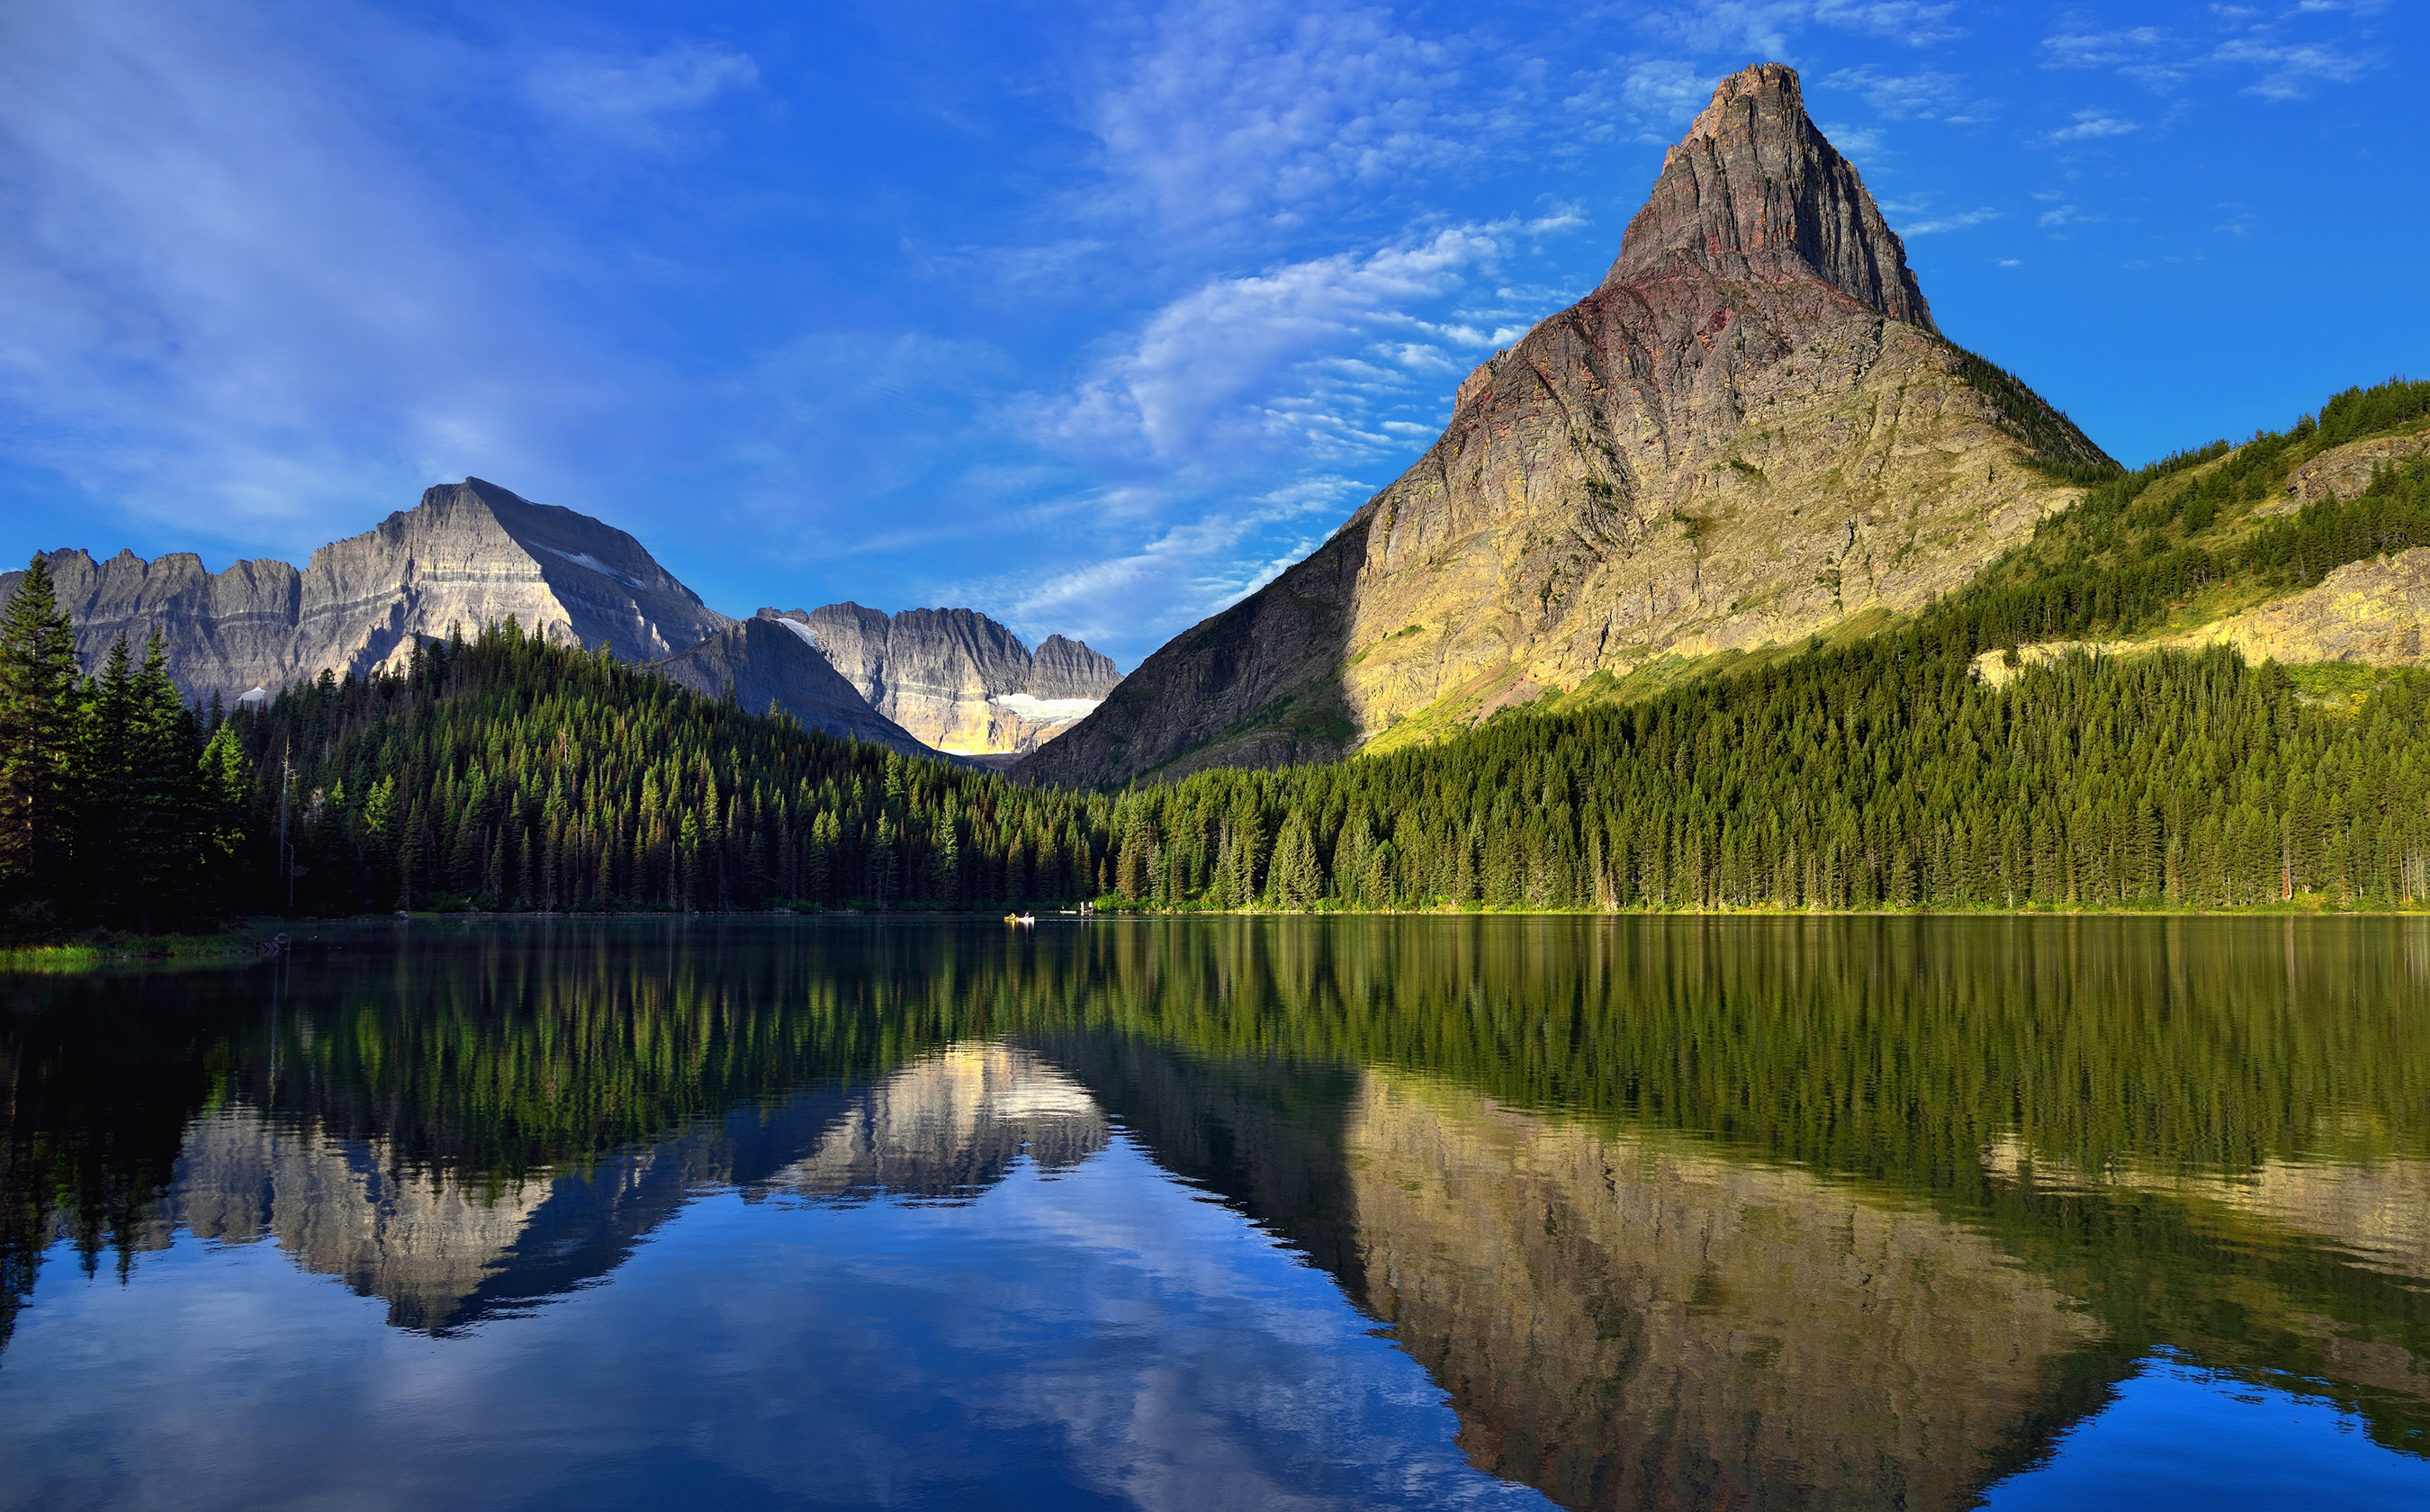 Baixe gratuitamente a imagem Natureza, Montanha, Pico, Lago, Terra/natureza, Reflecção na área de trabalho do seu PC